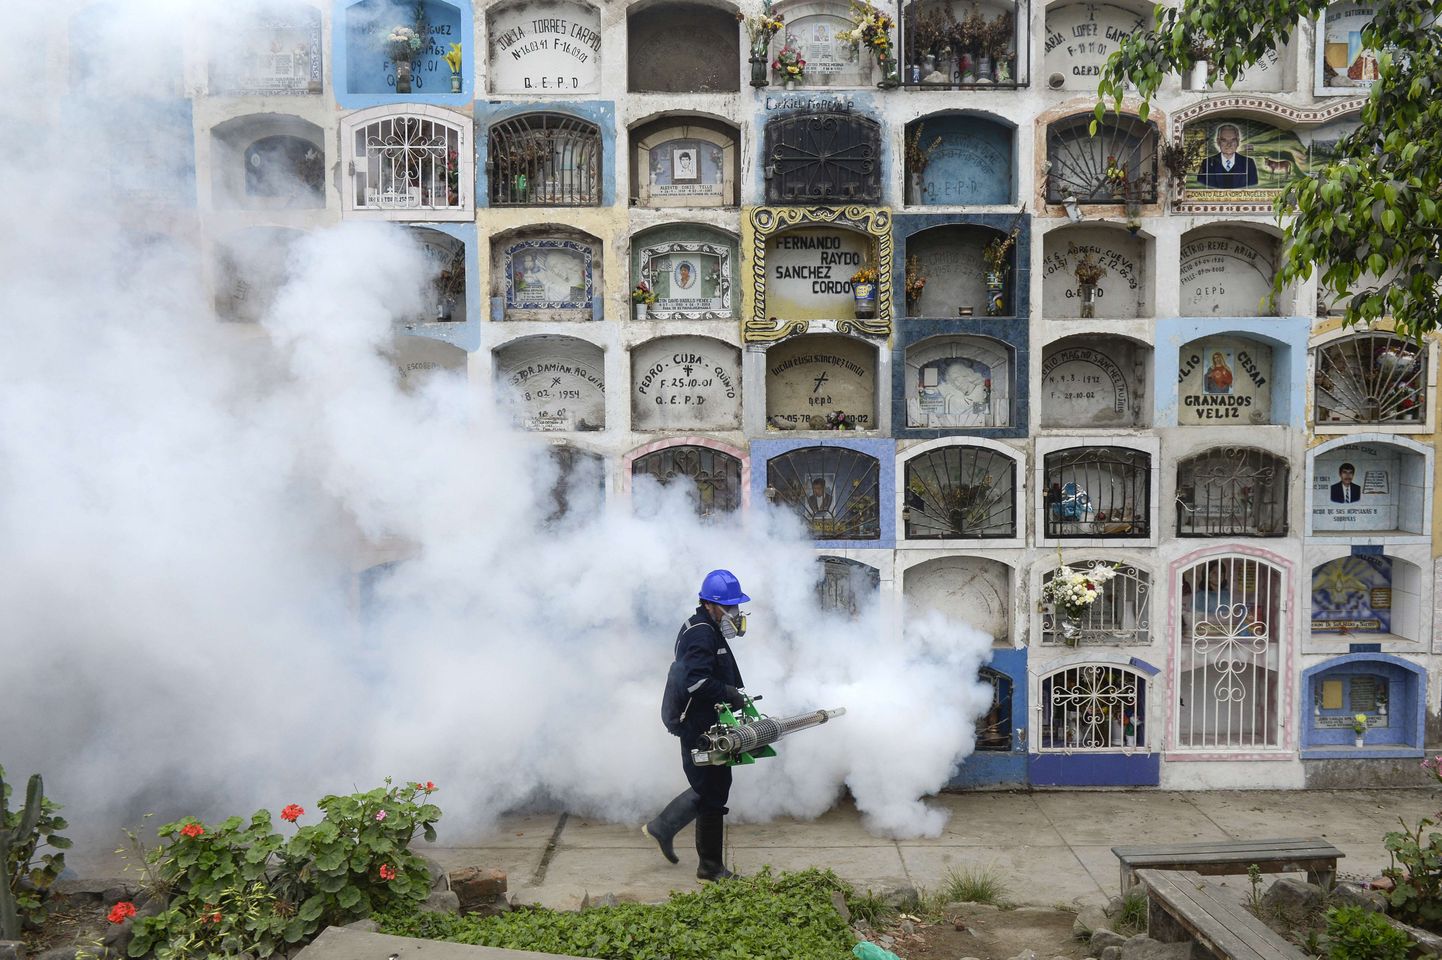 Zika viiruse leviku tõkestamine suitsu abil Peruu pealinna Lima lähedal asuval Esperanza surnuaial.